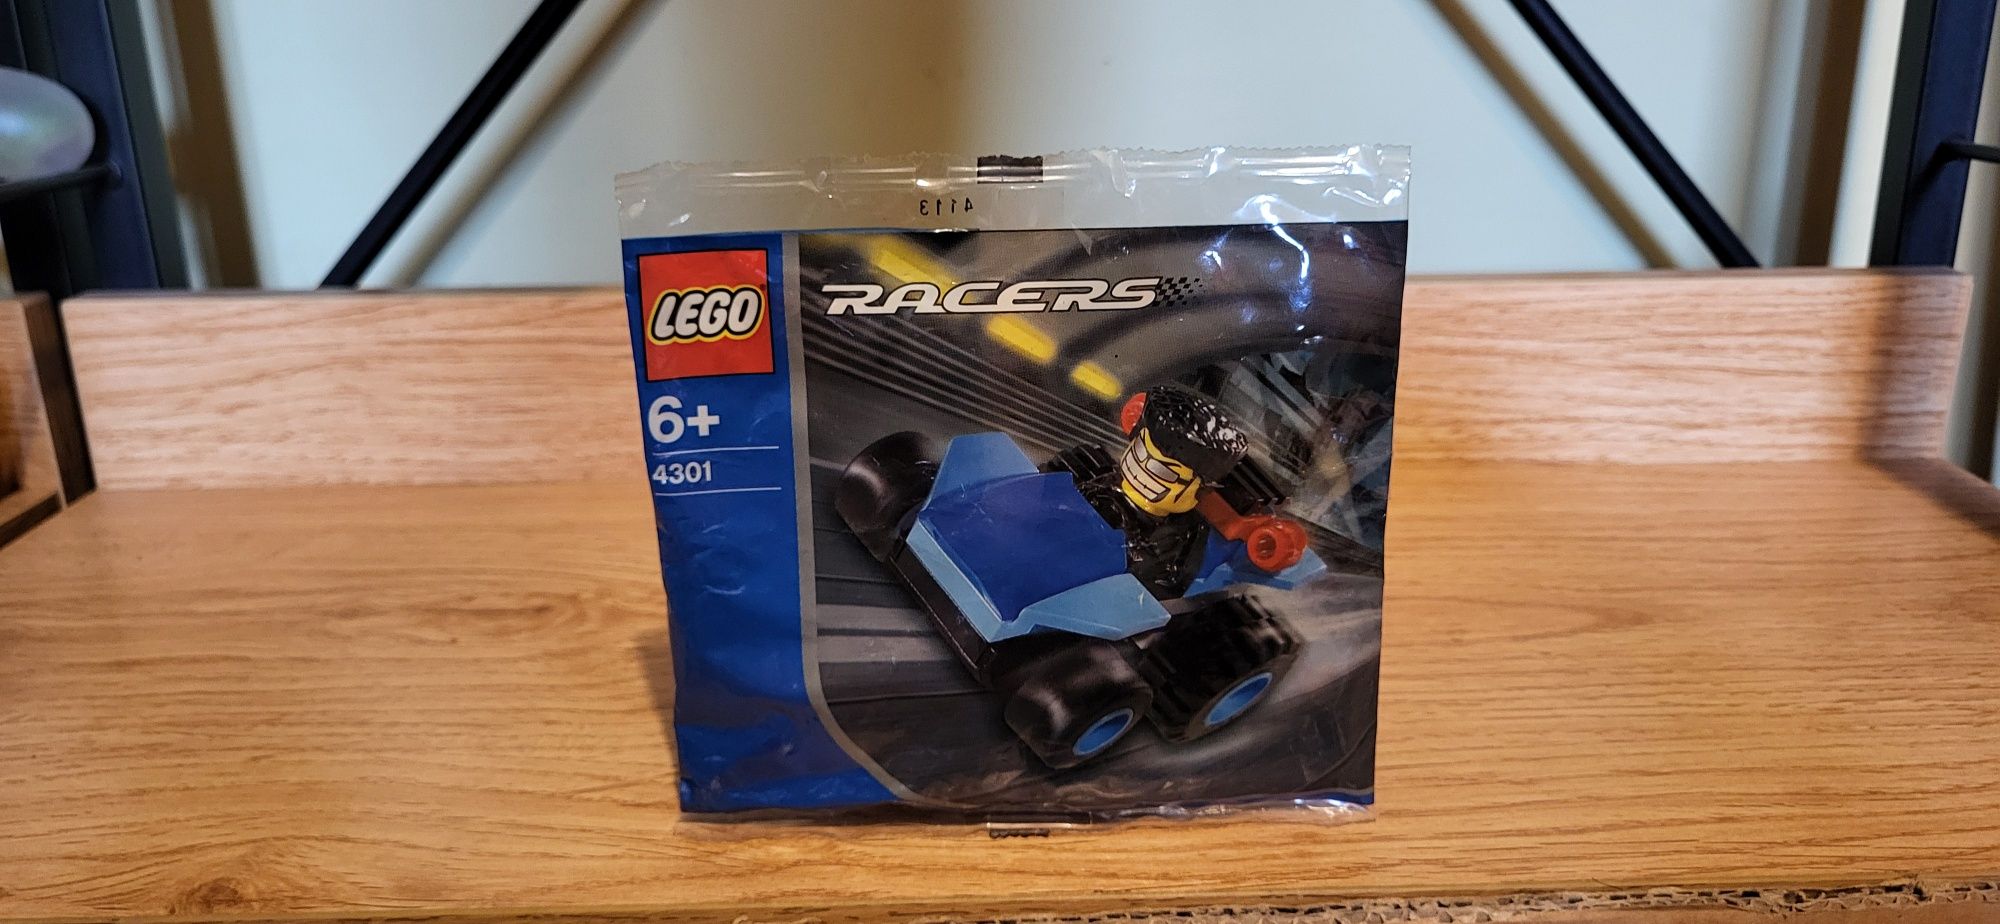 Lego Racers 4301 Niebieska kula Wyścigowy saszetka z klockami